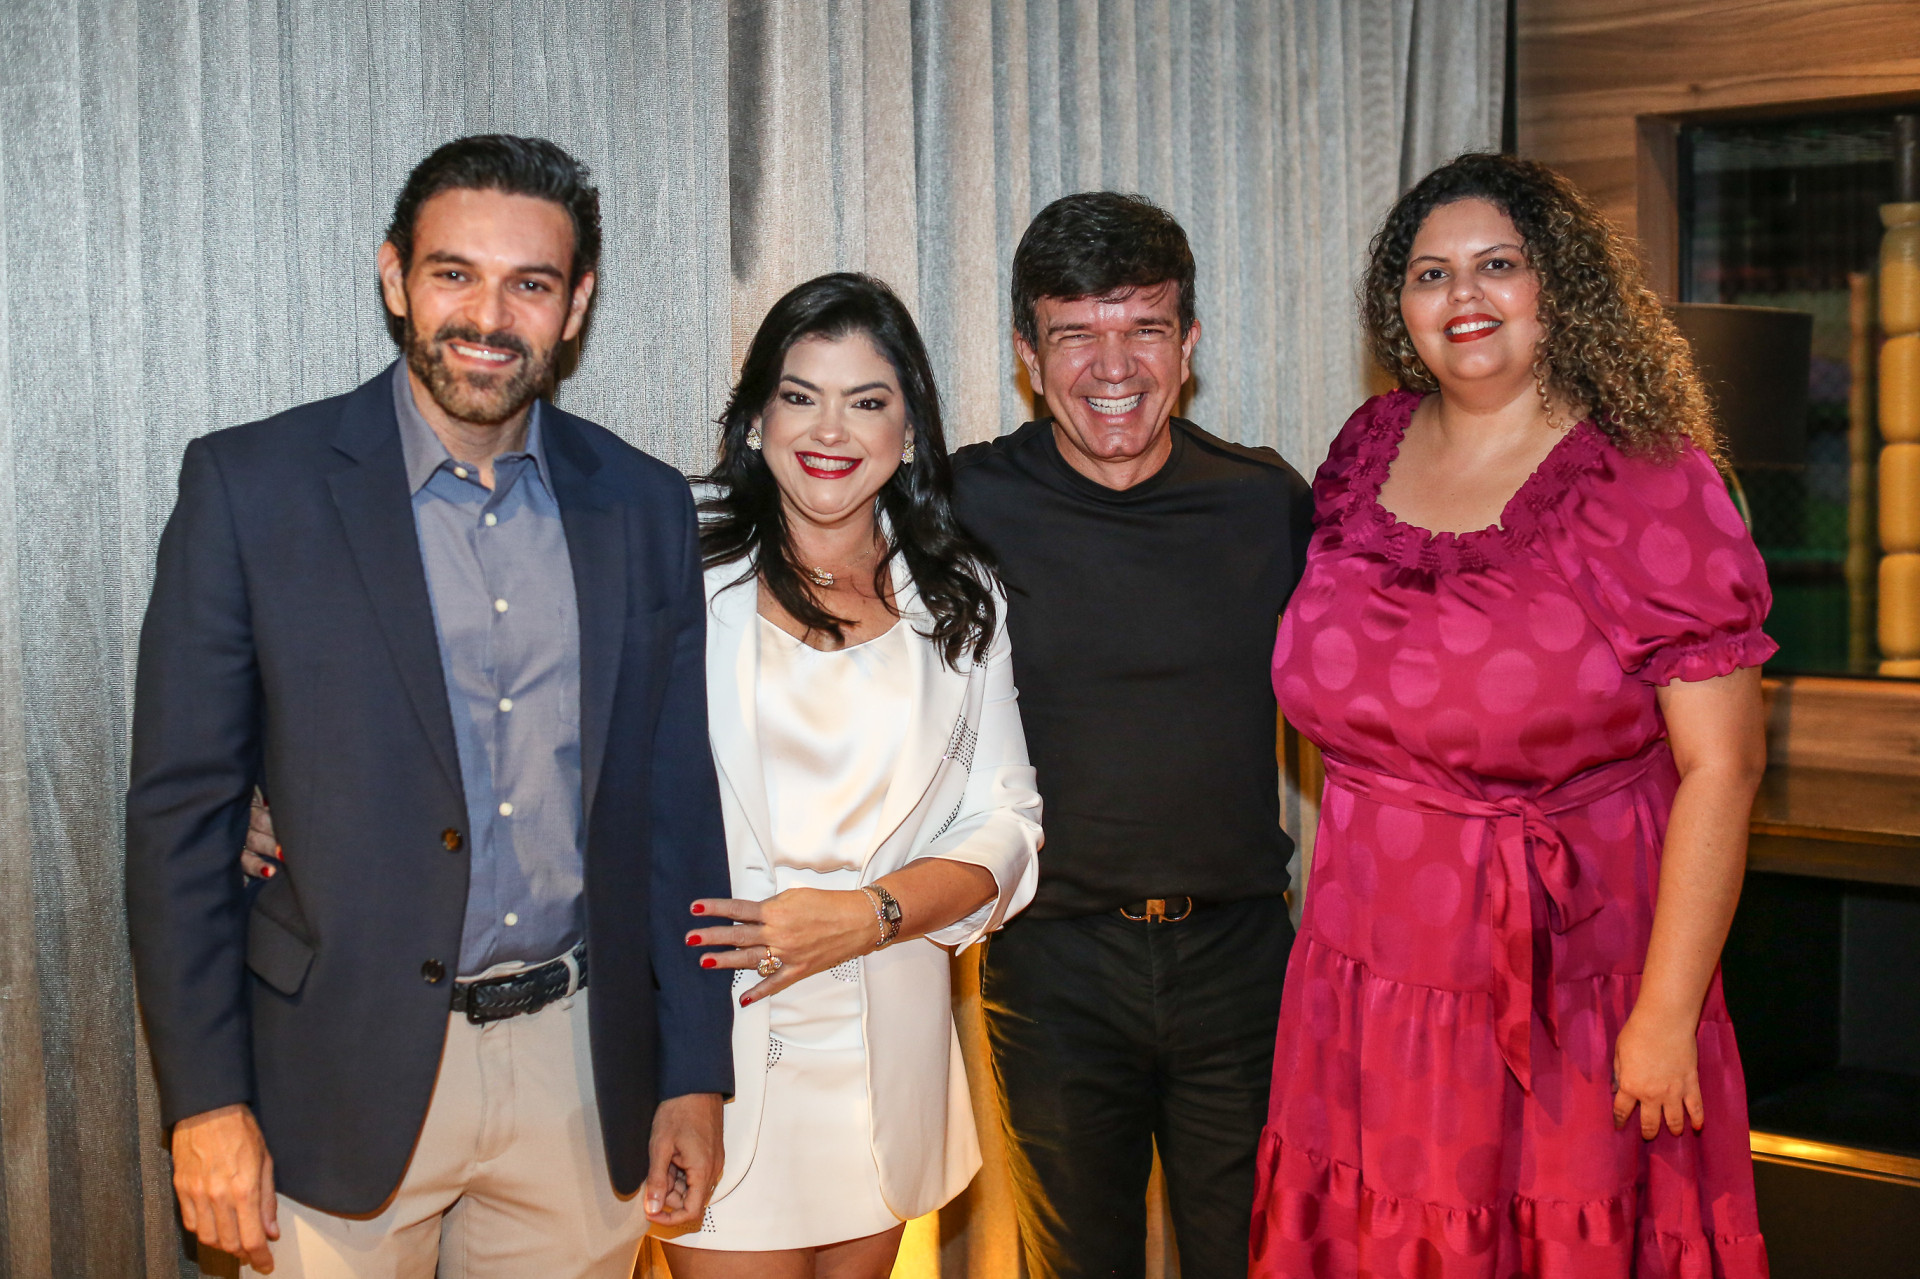 Clovis Holanda, Vivi Almada, Waldonys e Beatriz Cavalcante (Foto: JoaoFilho Tavares)